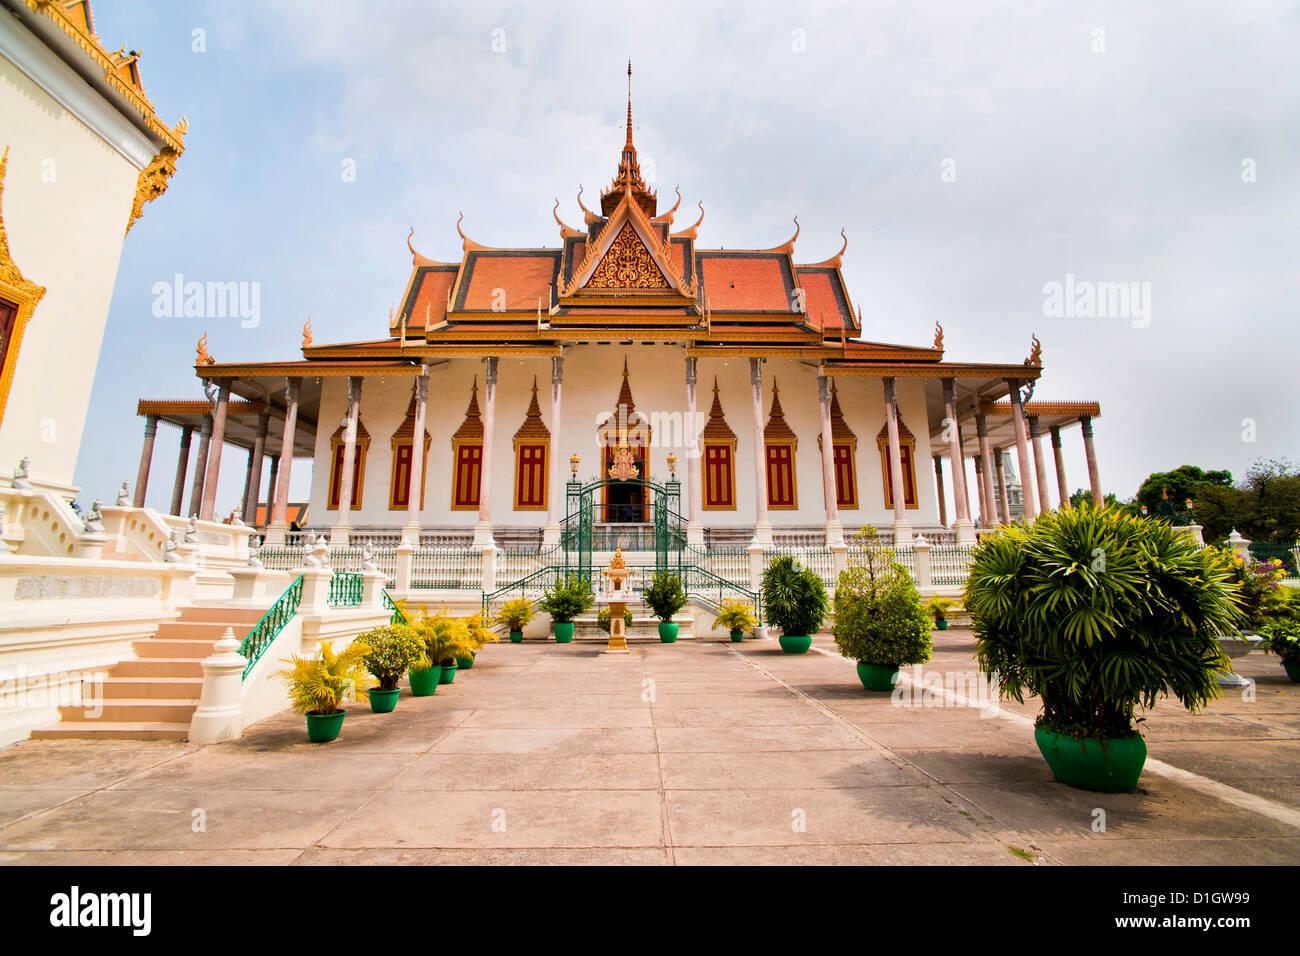 Pagoda d'argento, (il Tempio del Buddha di Smeraldo) presso il Palazzo Reale di Phnom Penh, Cambogia, Indocina, Asia sud-orientale, Asia Foto Stock